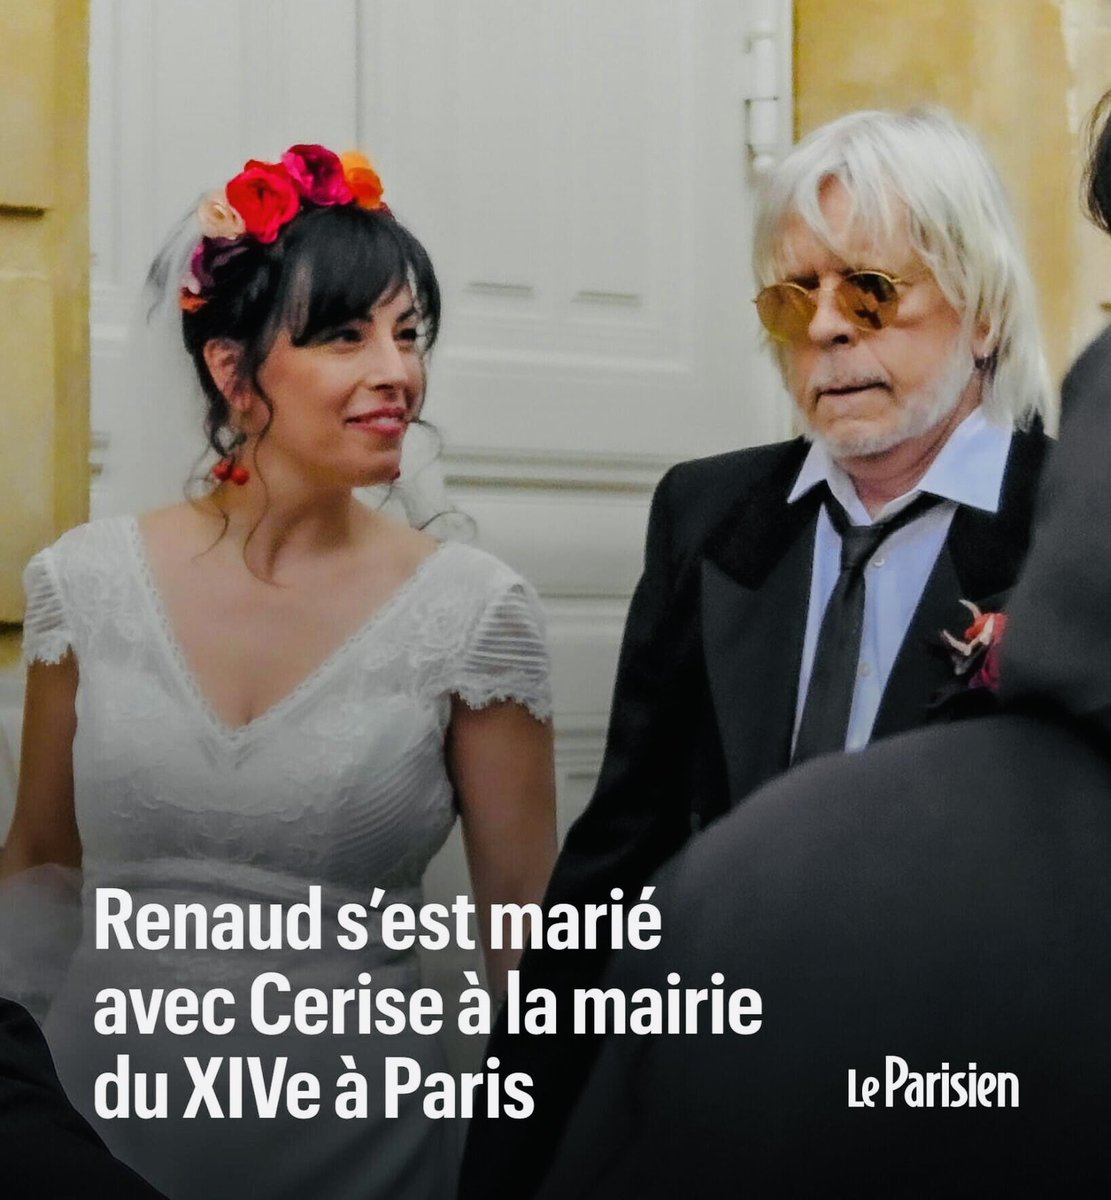 Le chanteur Renaud c’est remarié ce week-end à Paris avec une maquilleuse bretonne (Trentemout) qu’il a surnommé Cerise 🍒🍒🍒 Félicitations💕🥂 #renaud #mariage @renaudofficiel